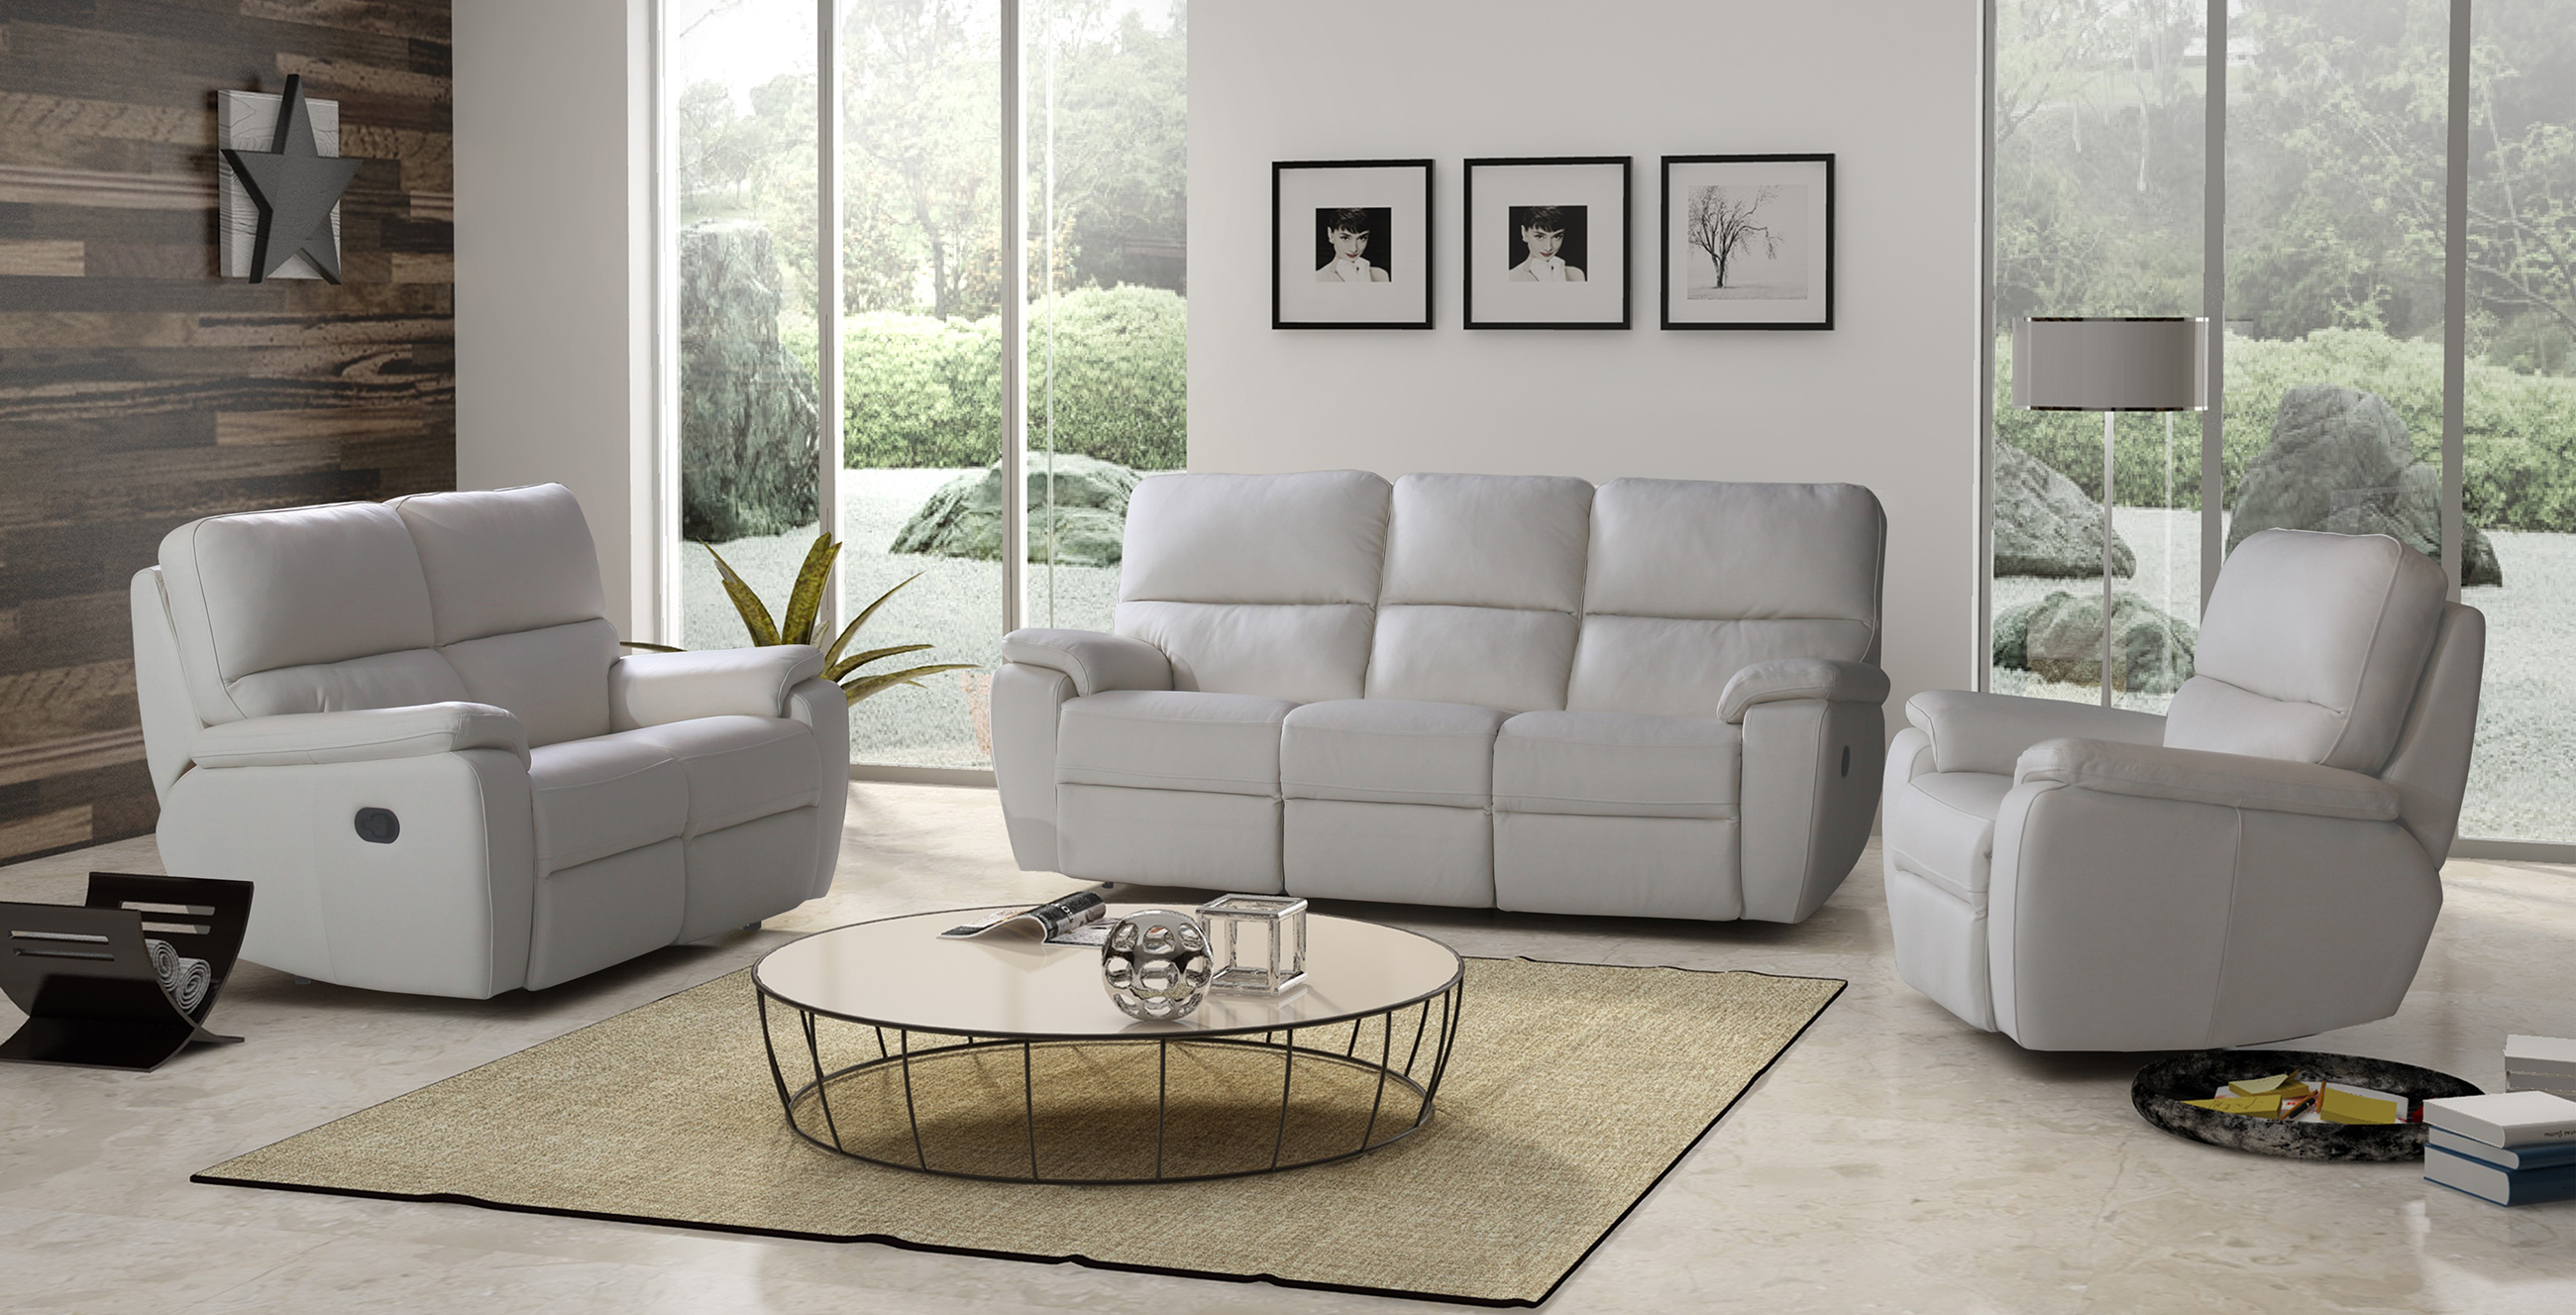 Marco - nowoczesny komplet wypoczynkowy biała sofa skórzana i fotele skórzane z funkcją relax - meble na zamówienie TC Wrocław